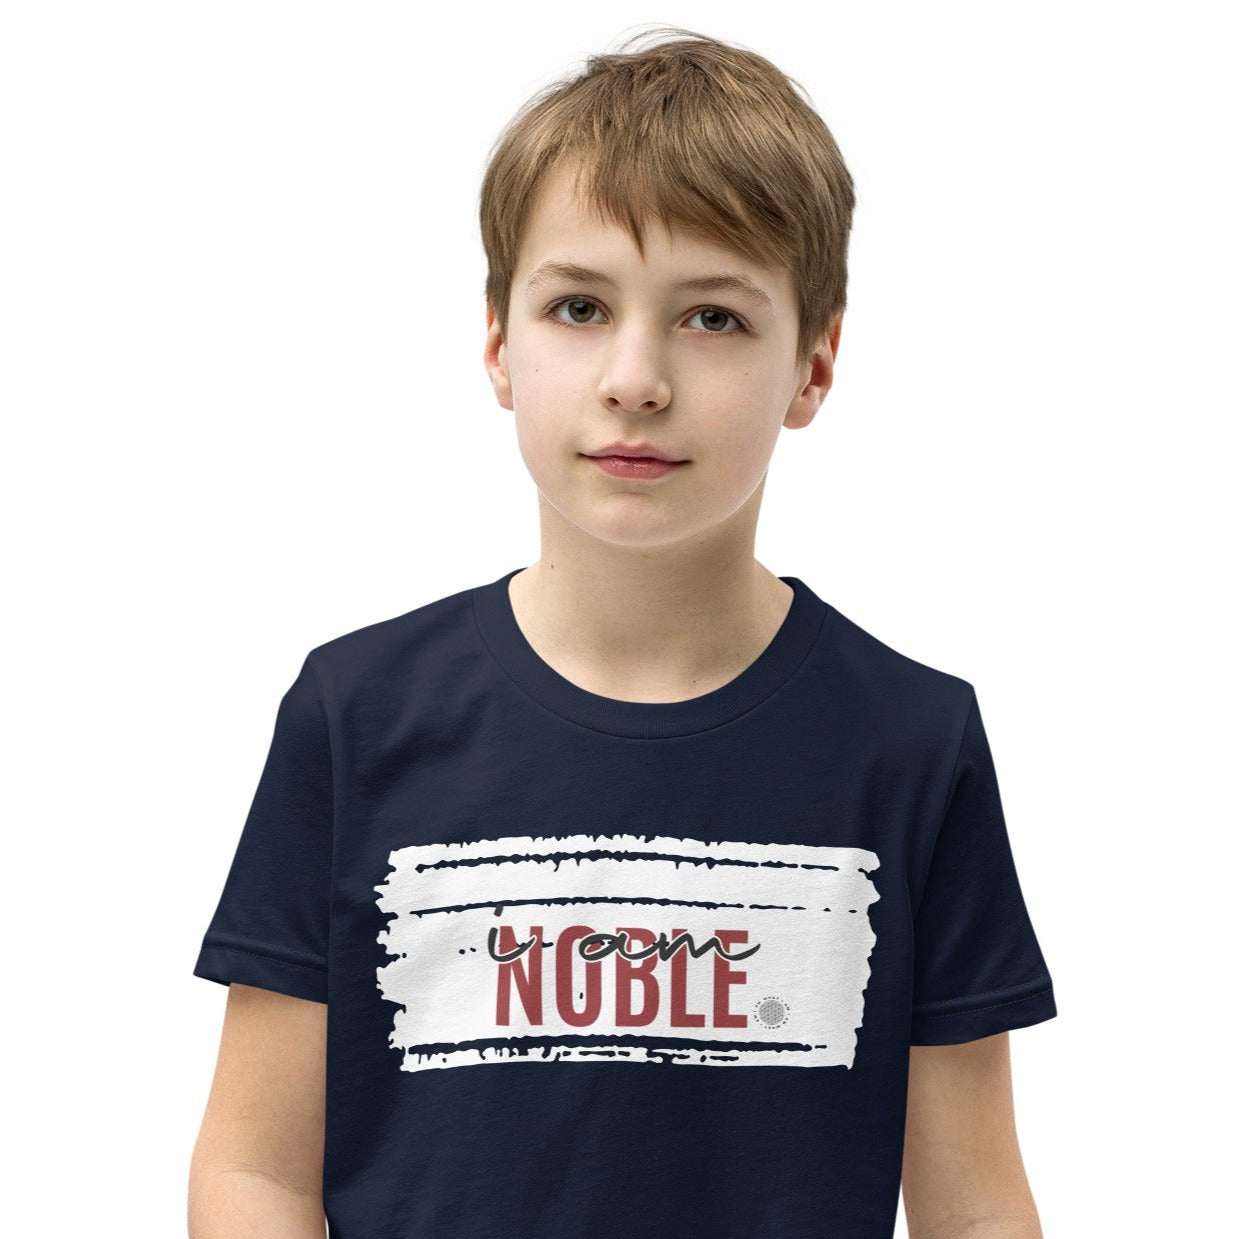 I Am Noble Youth T-Shirt